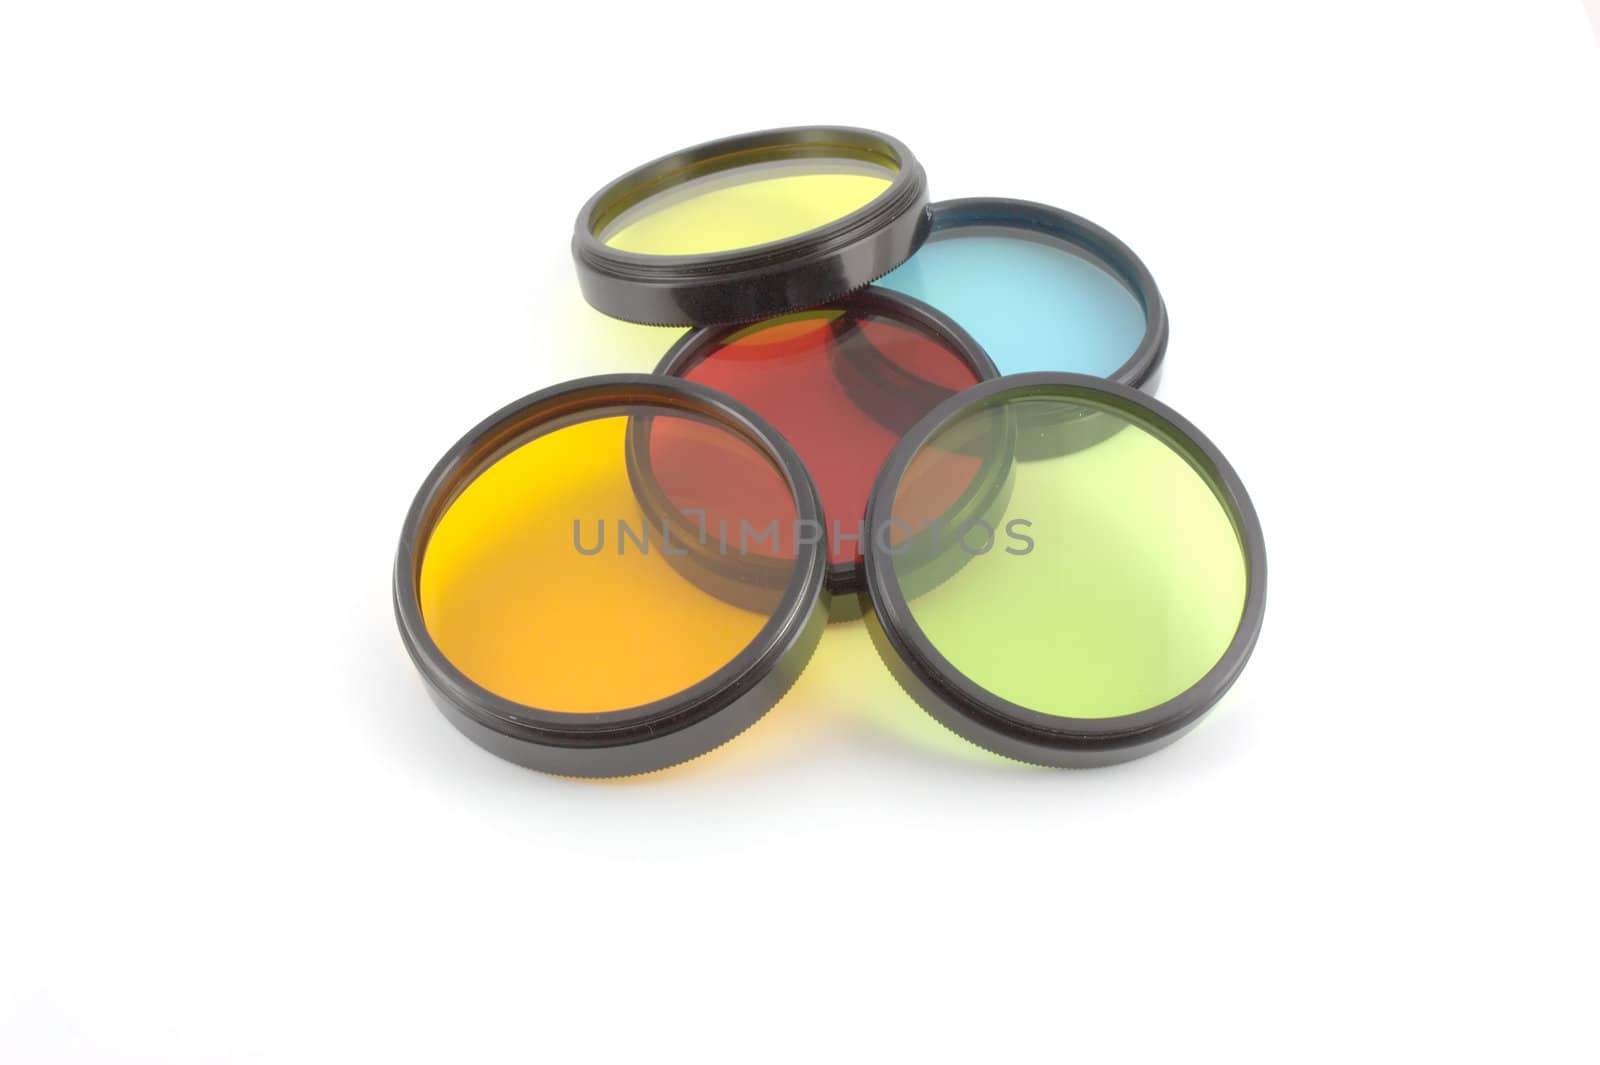 Filter for lenses by sergpet